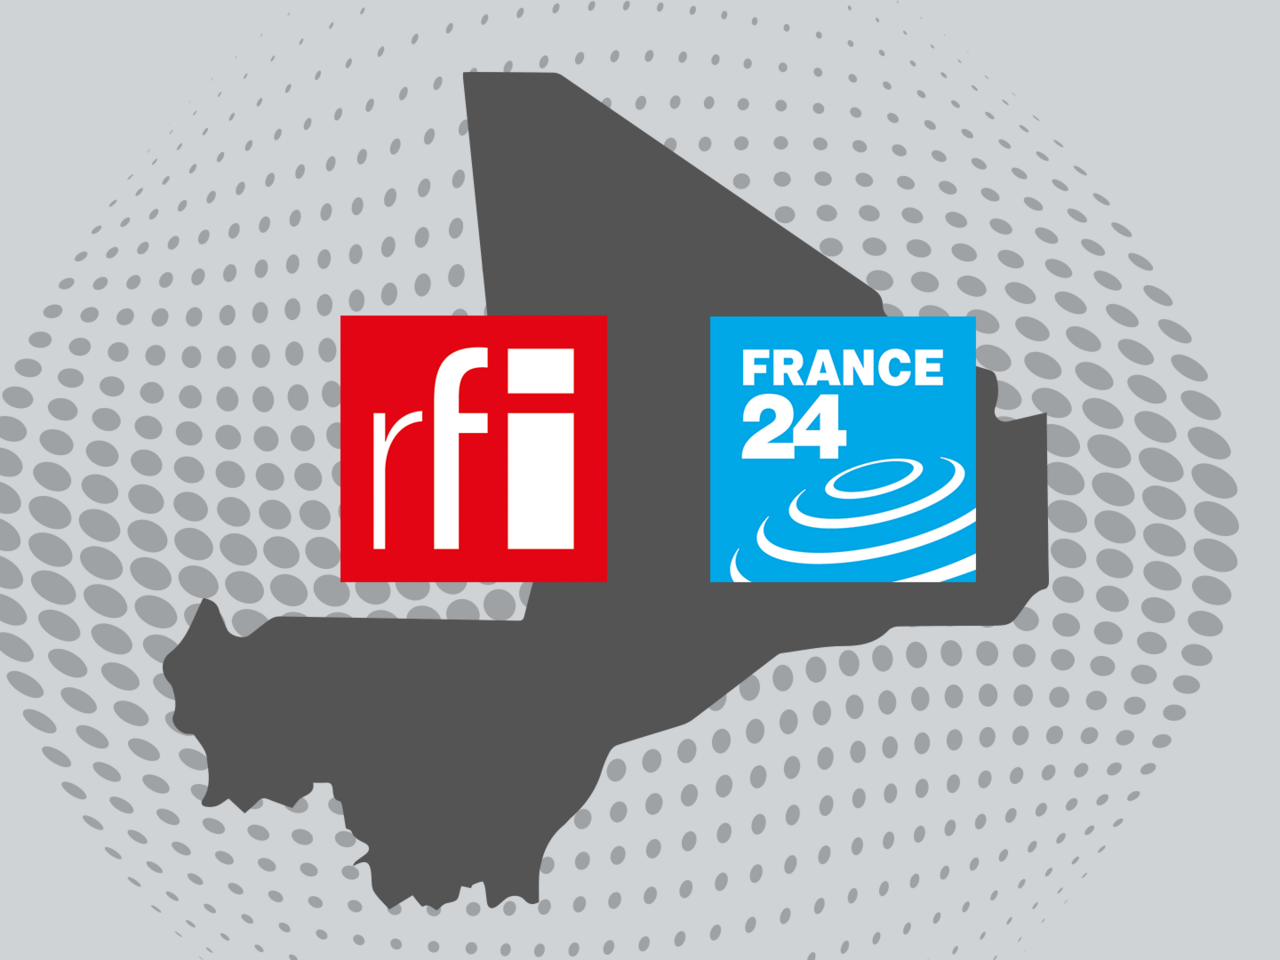 La Haute Autorité de la Communication du Mali a récemment retiré définitivement RFI et France 24 des bouquets du pays. Pour le groupe France Médias Monde, ce divorce est non avenu. 